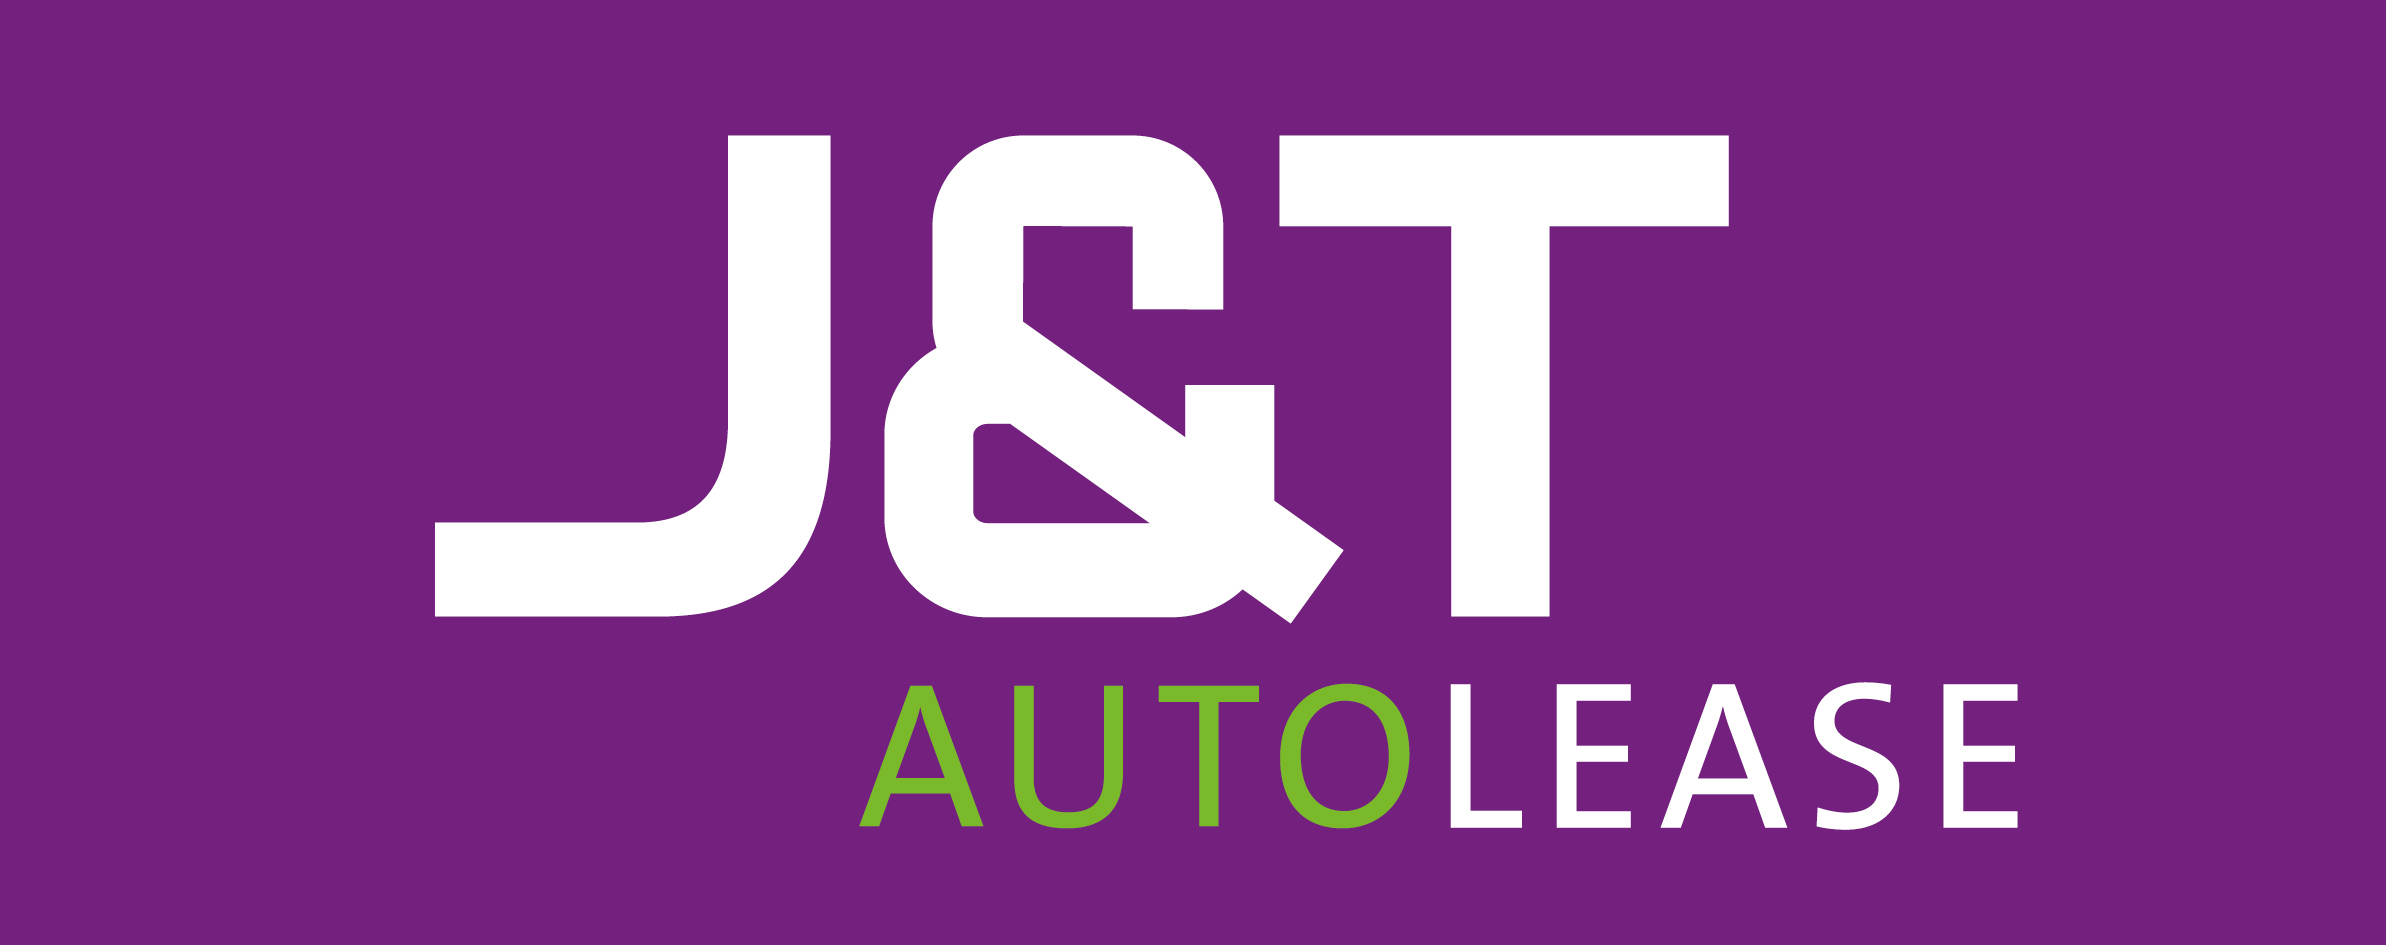 J&T Autolease Logo Paars Wit Groen